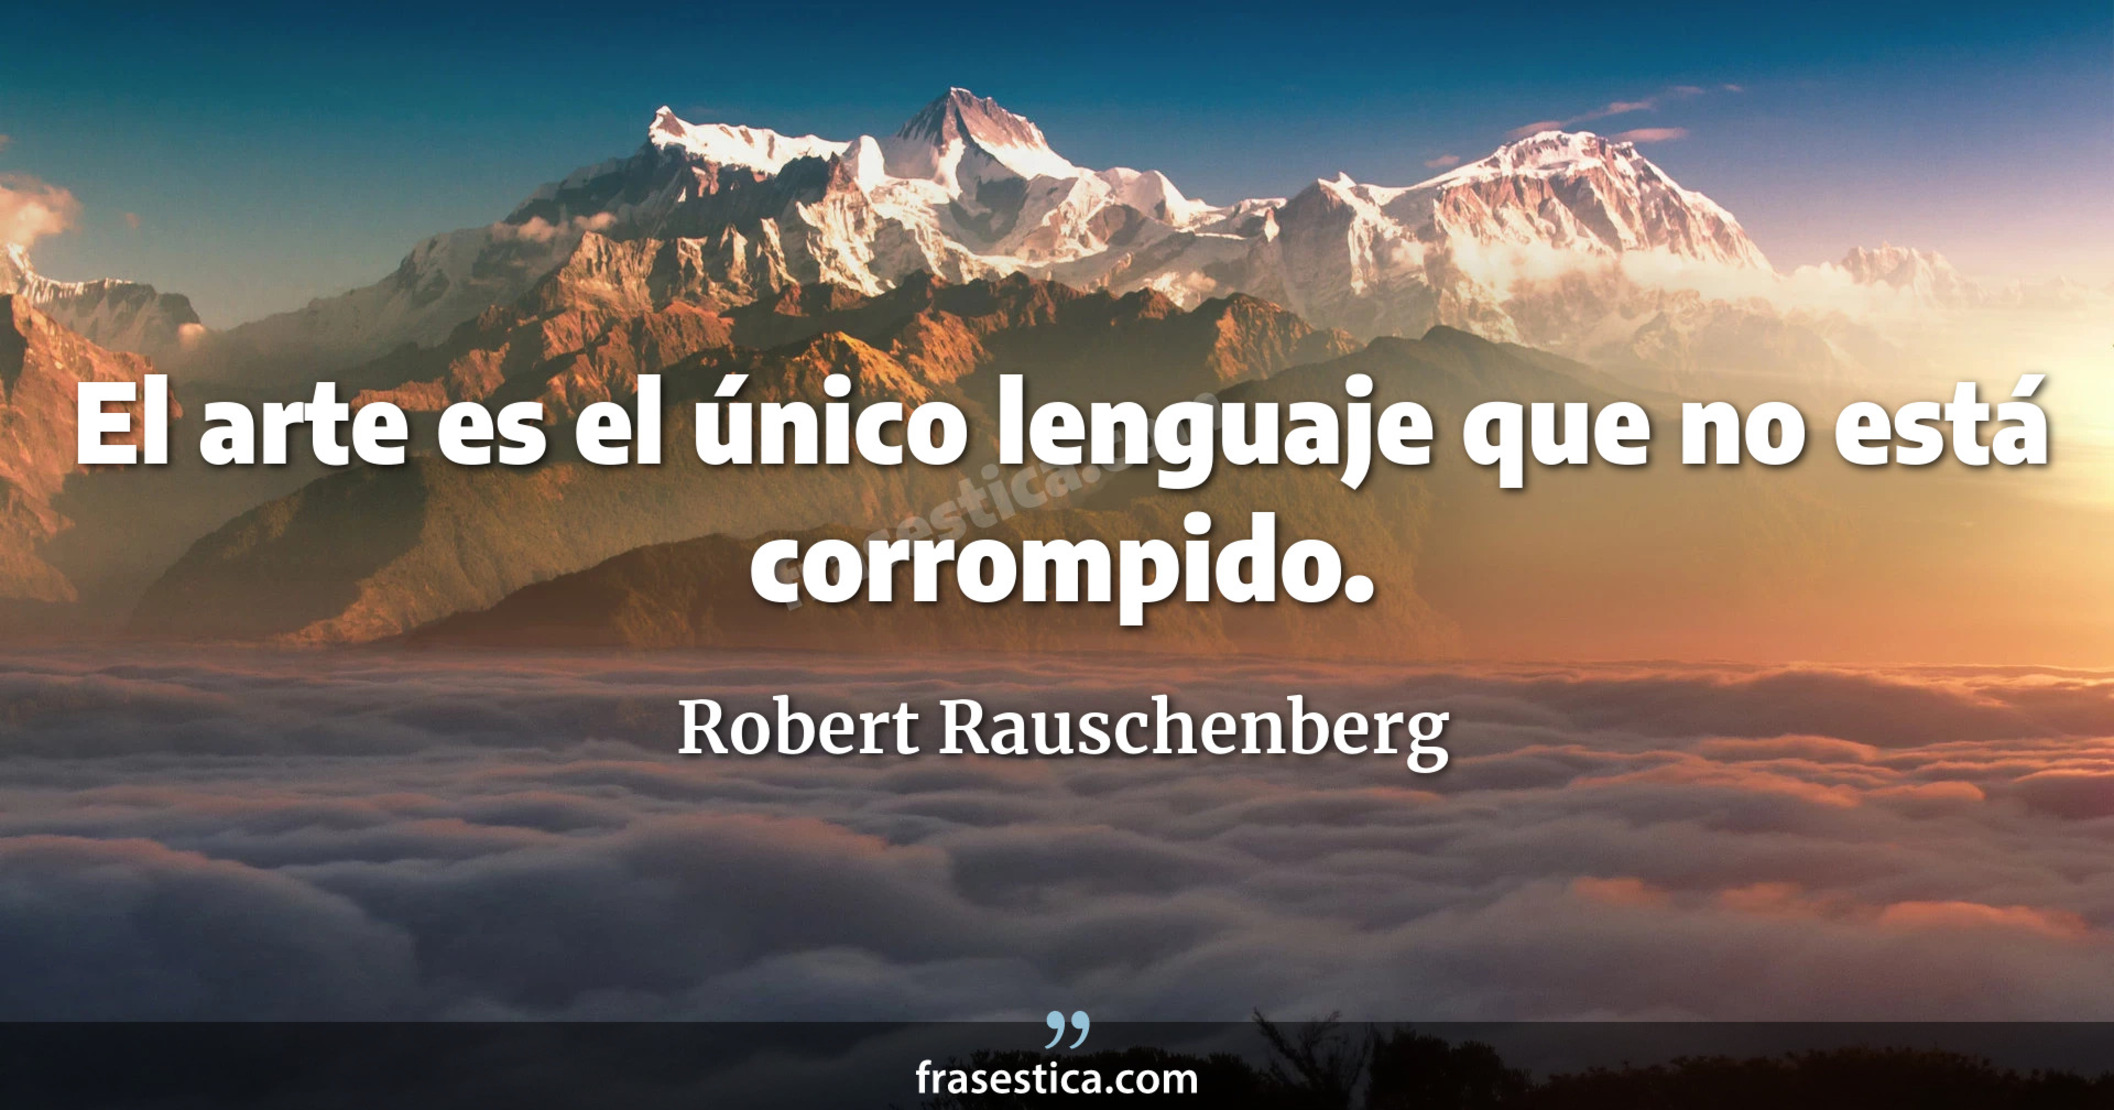 El arte es el único lenguaje que no está corrompido. - Robert Rauschenberg